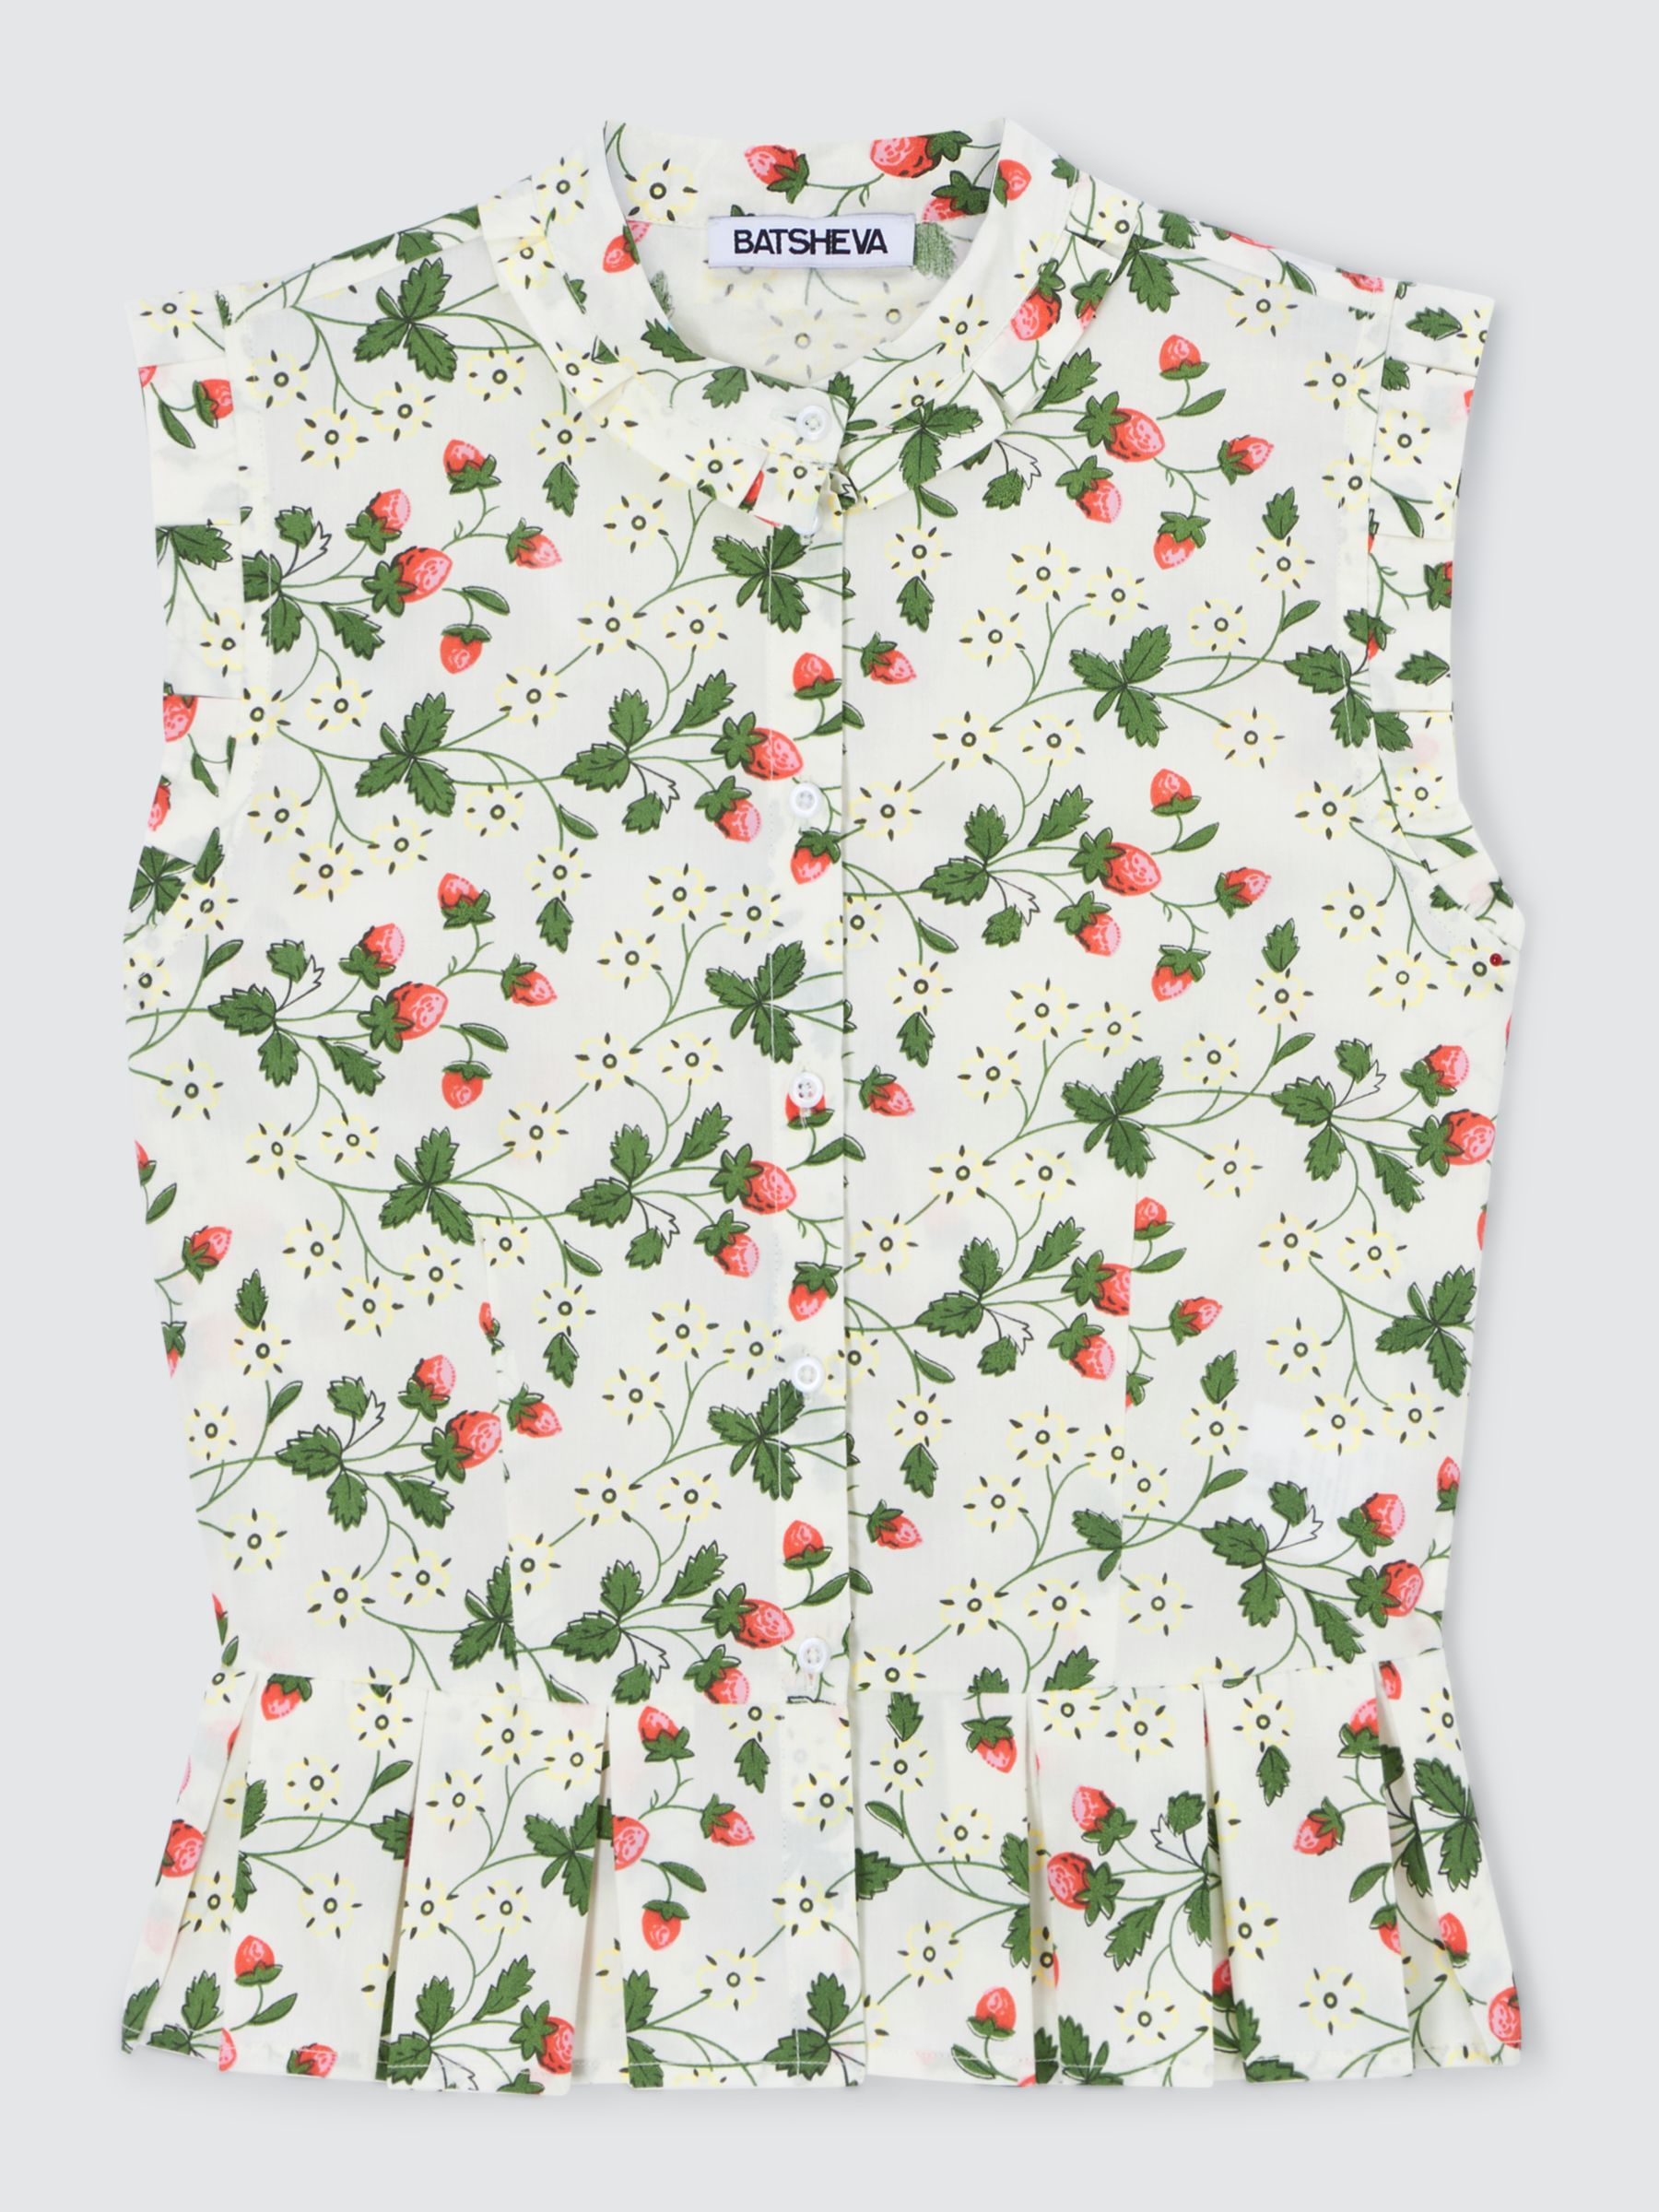 Batsheva x Laura Ashley Mared Strawberry Field Shirt, White/Multi, 16